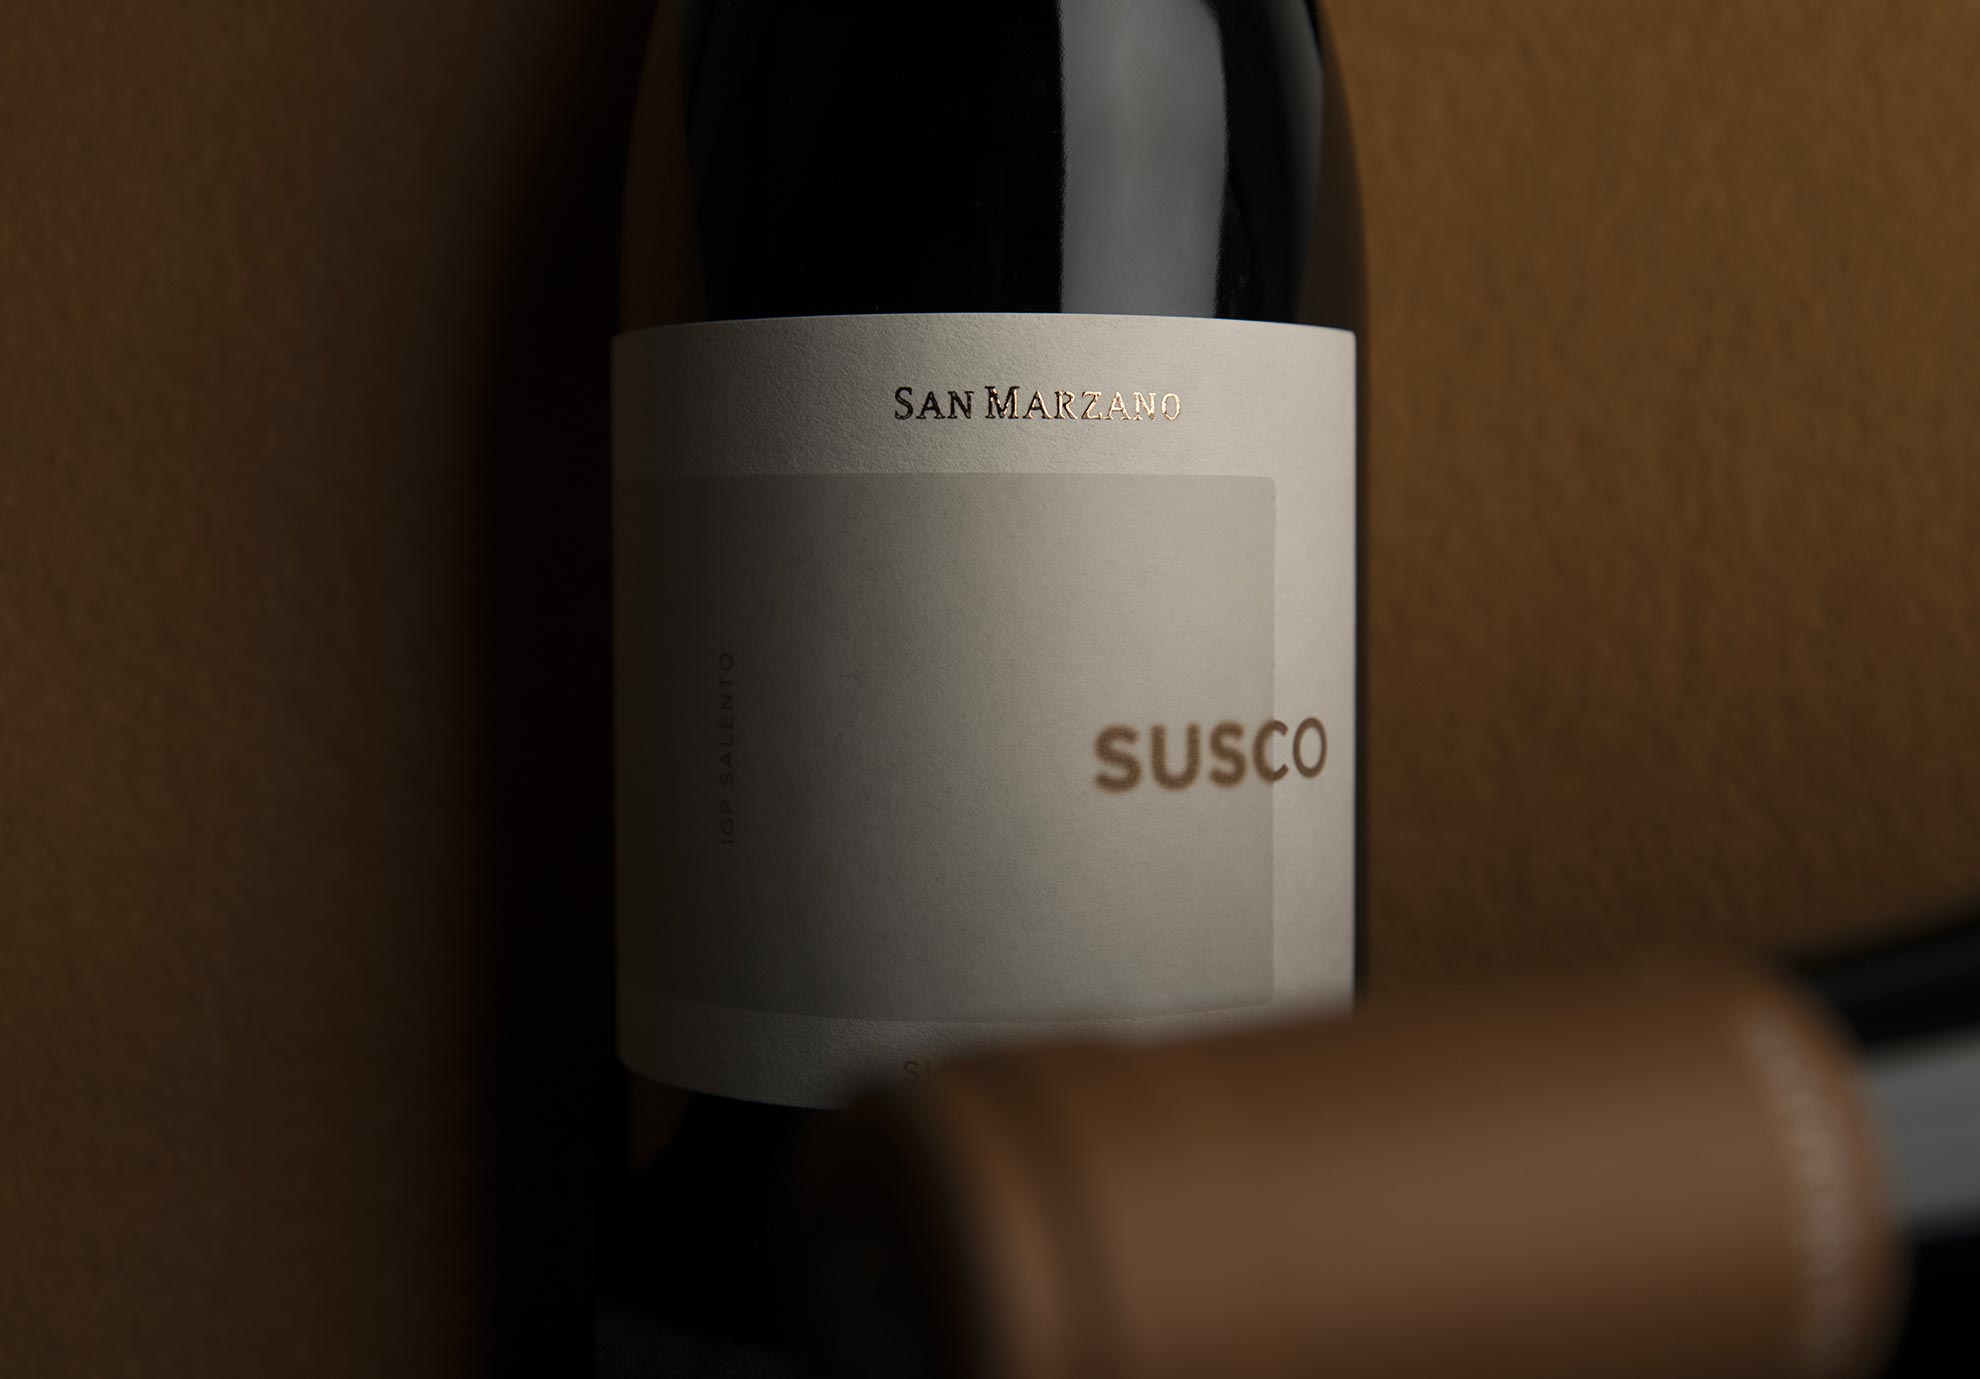 Susco wine